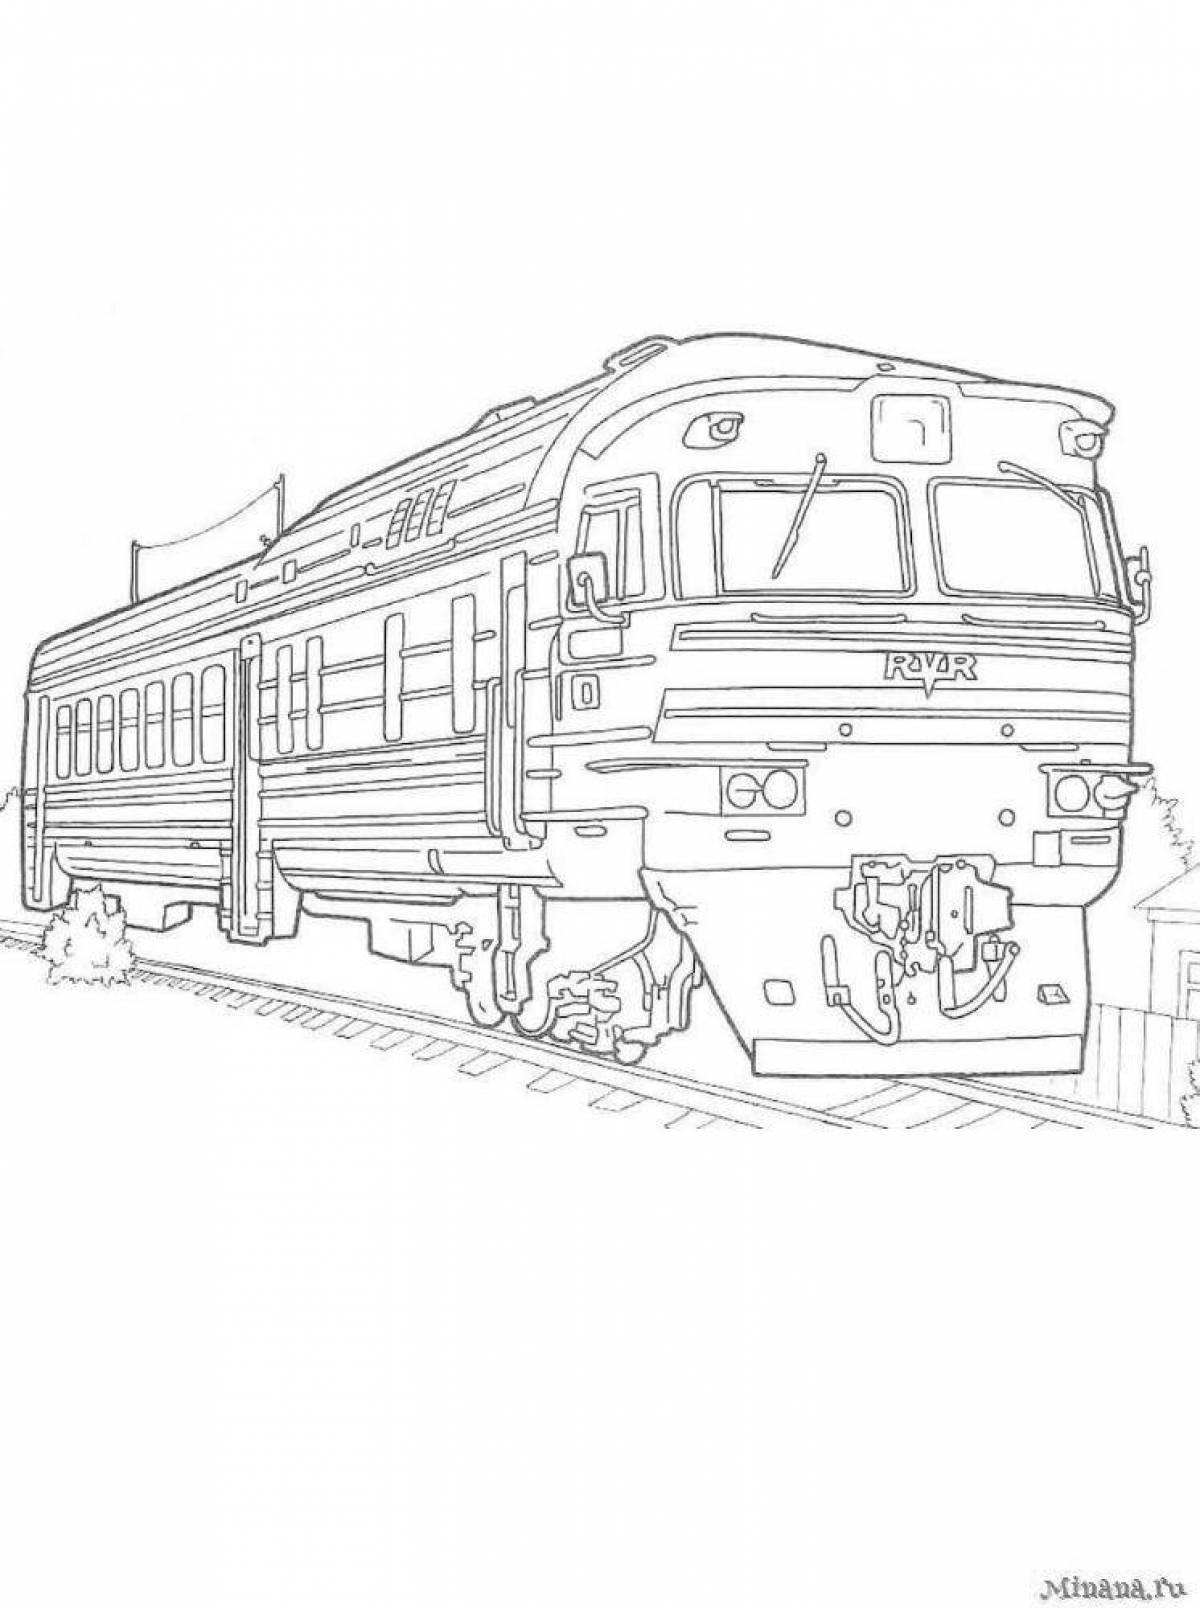 Фото Модная раскраска поезда ржд